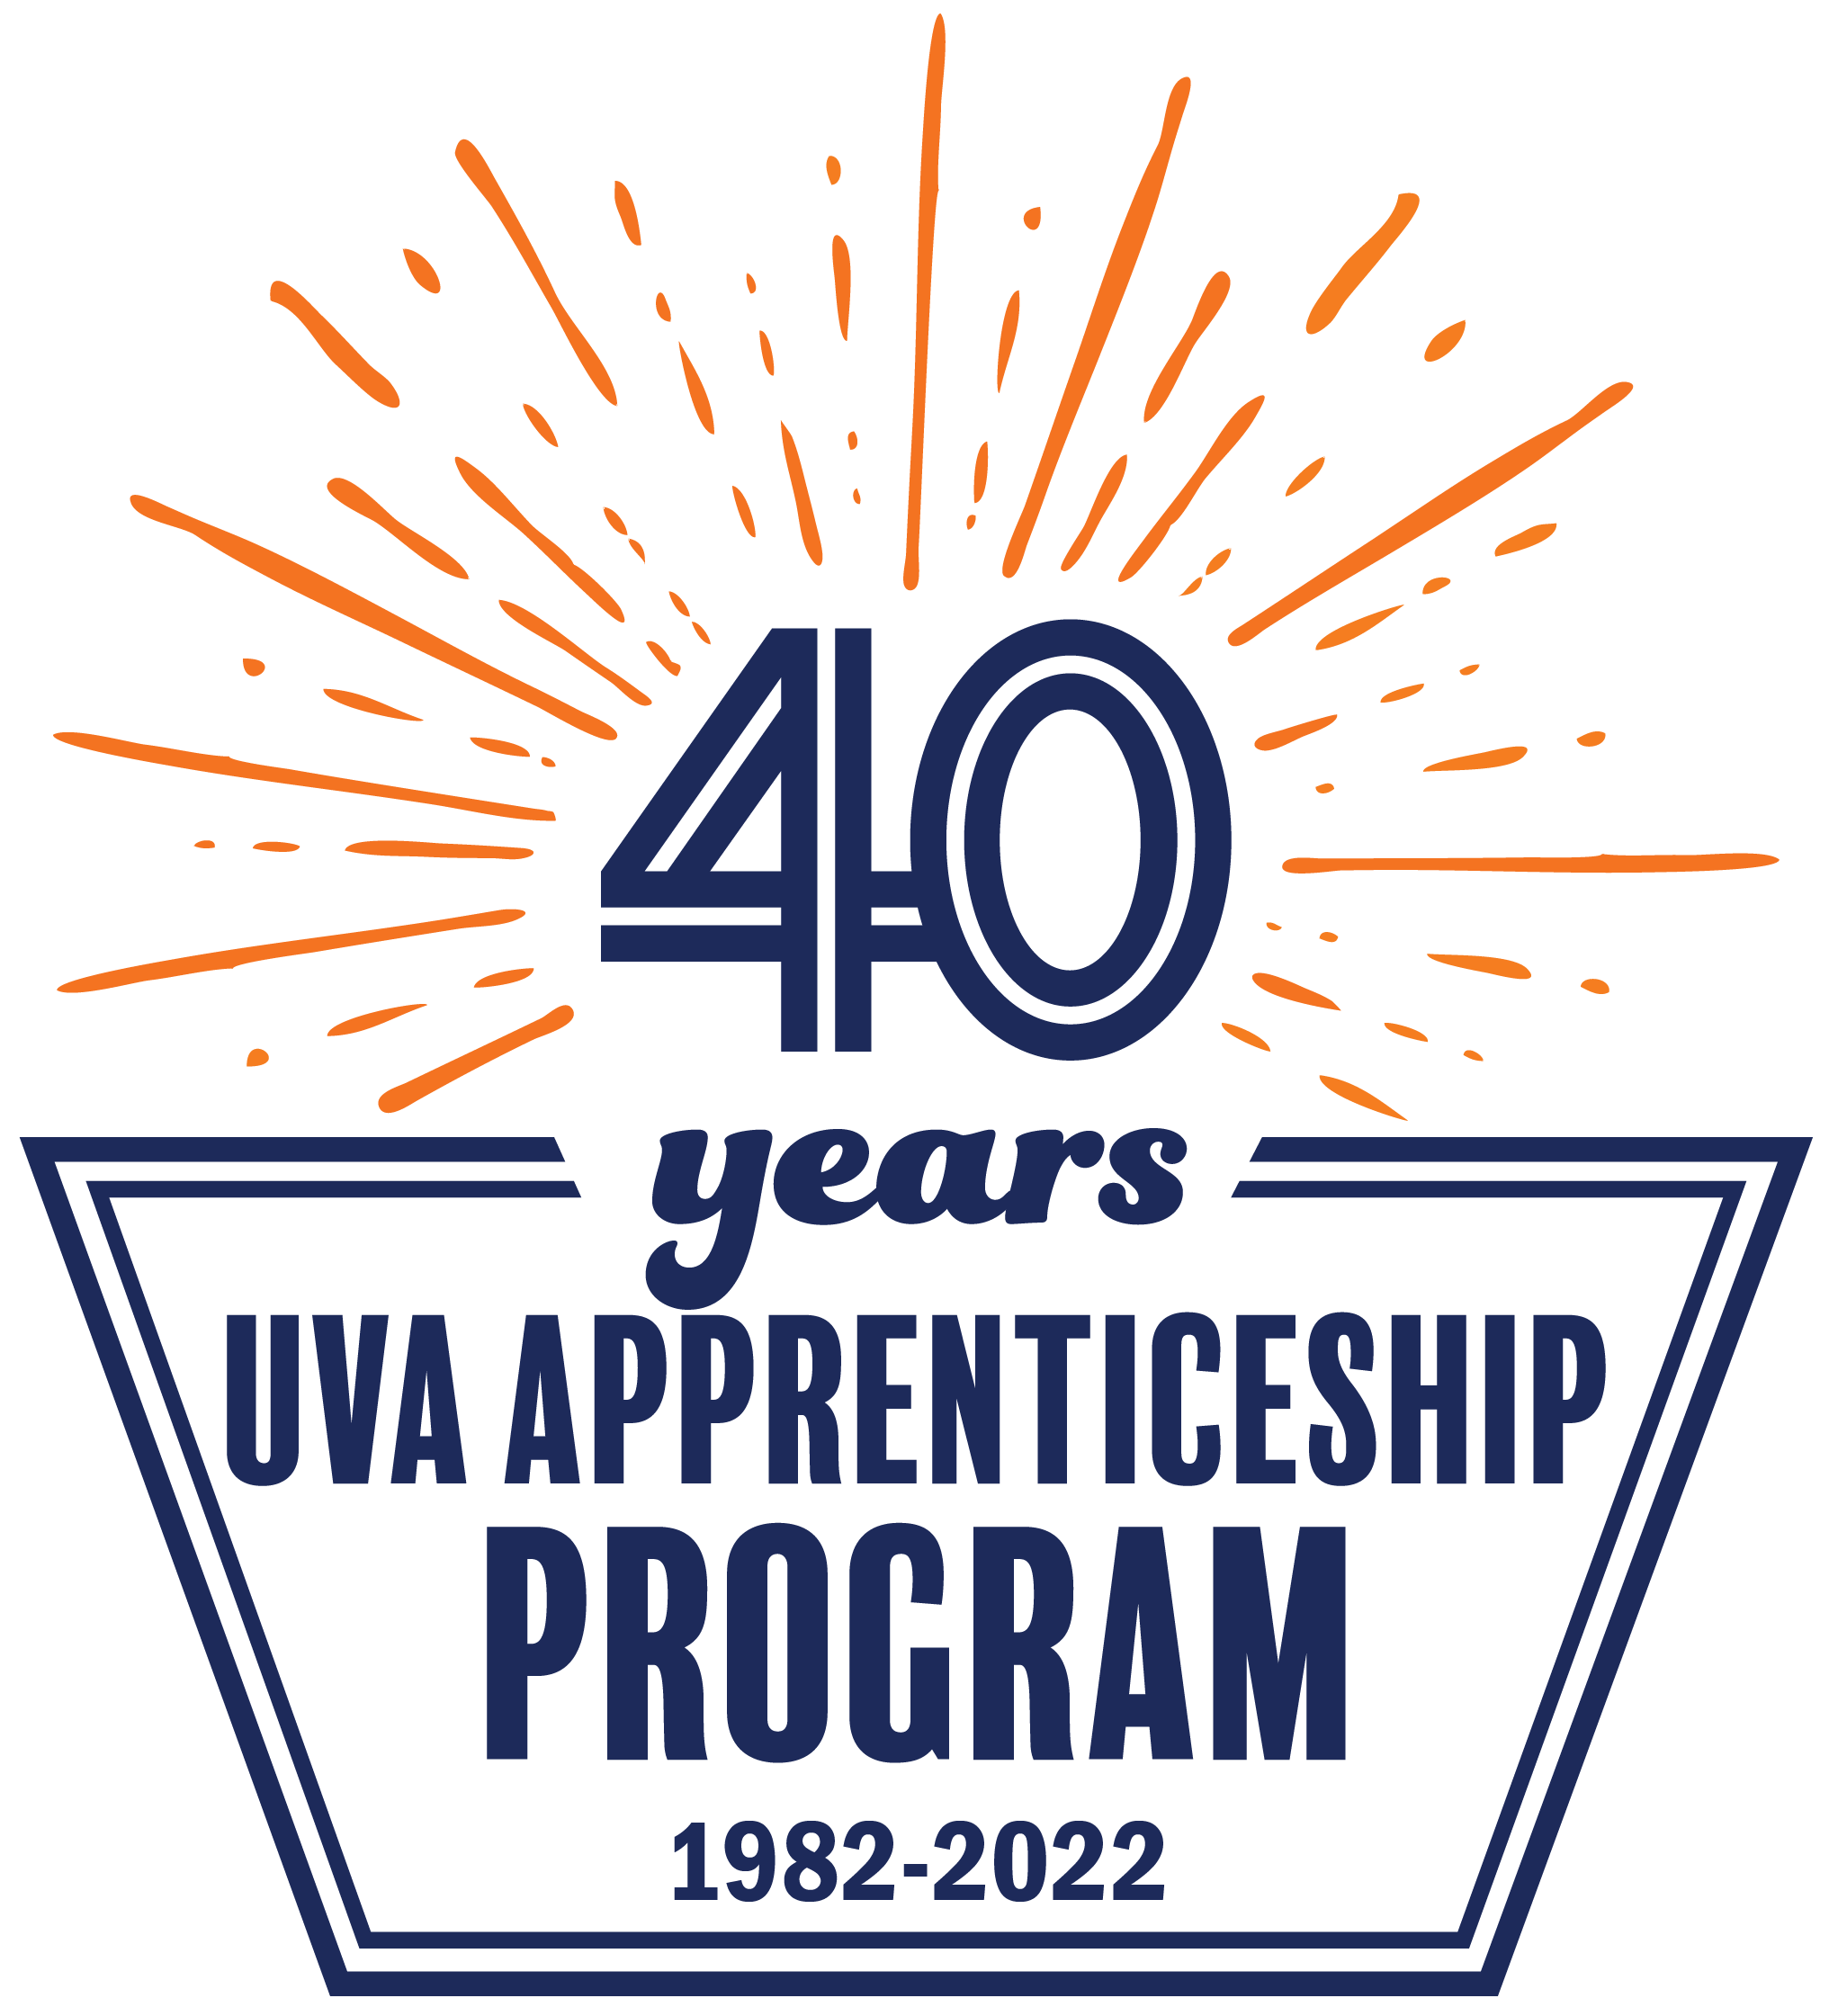 40 years UVA Apprenticeship Program 1982-2022